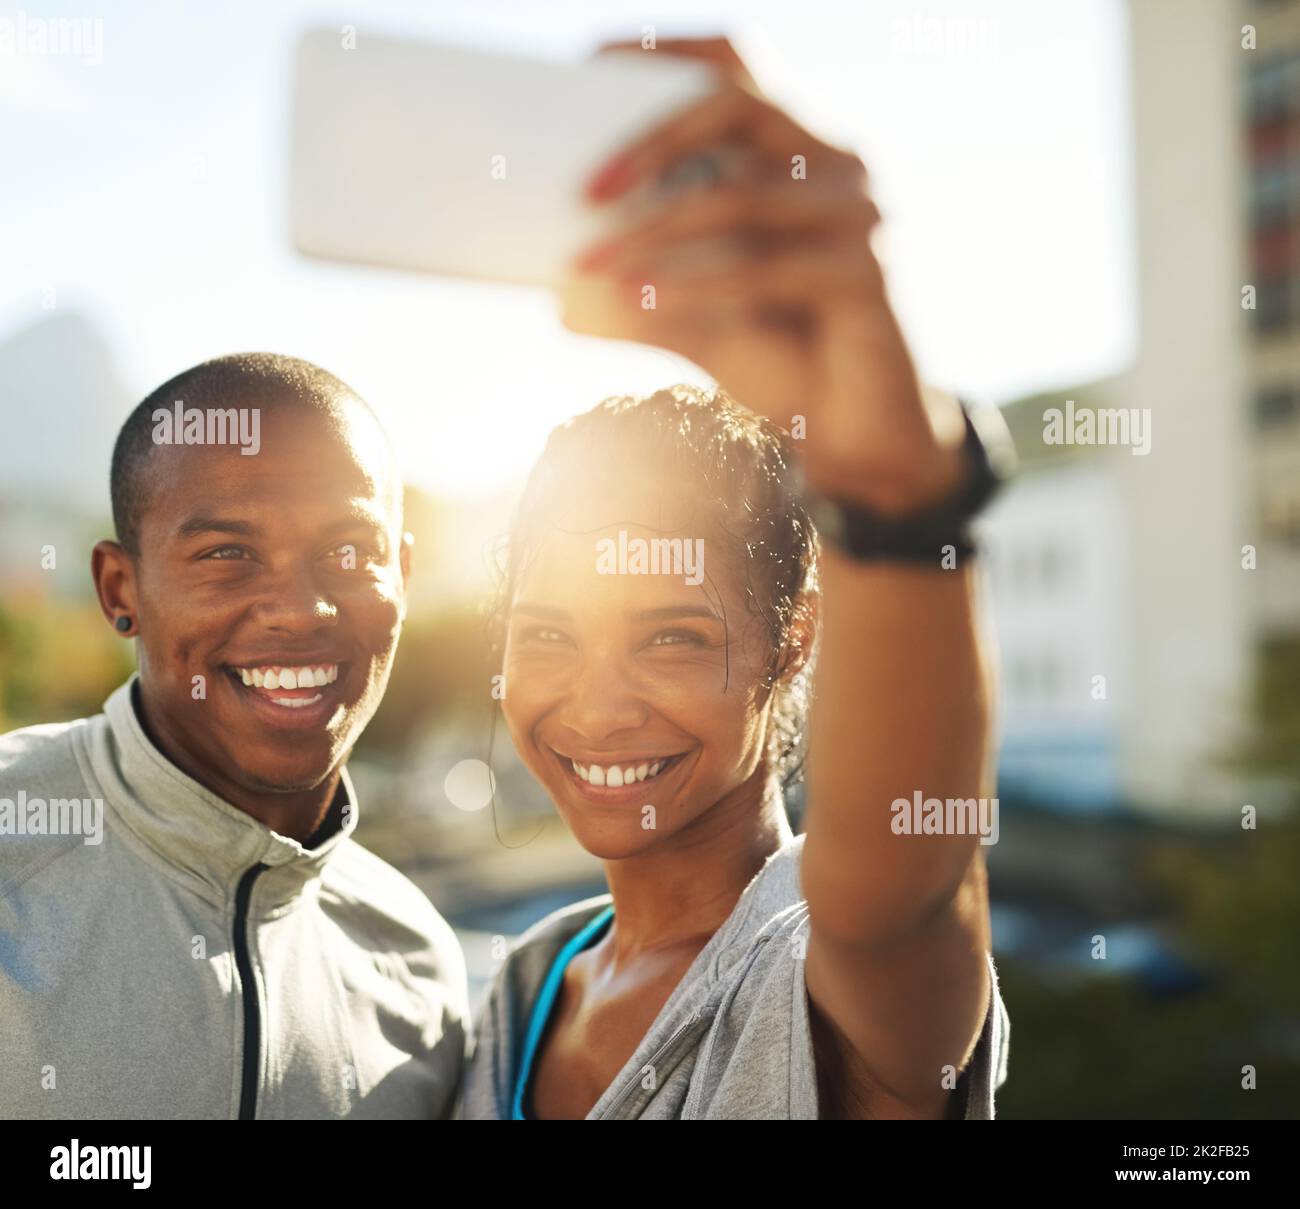 Dynamique et vitalité. Photo d'un jeune couple sportif prenant une photo avec un téléphone portable. Banque D'Images